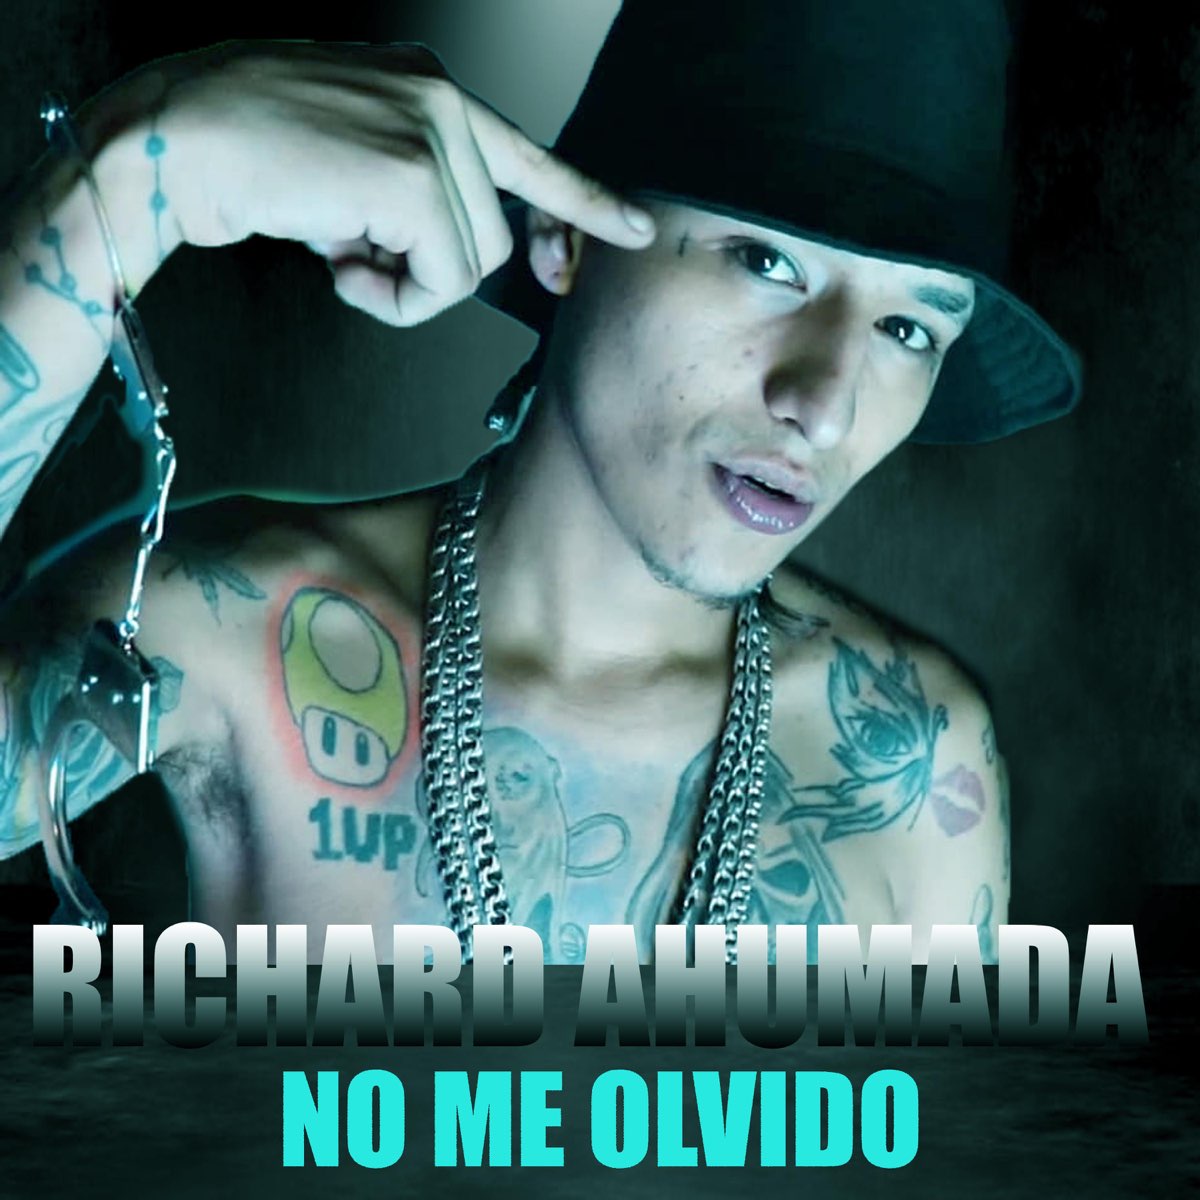 No Me Olvido - EP by Richard Ahumada on Apple Music